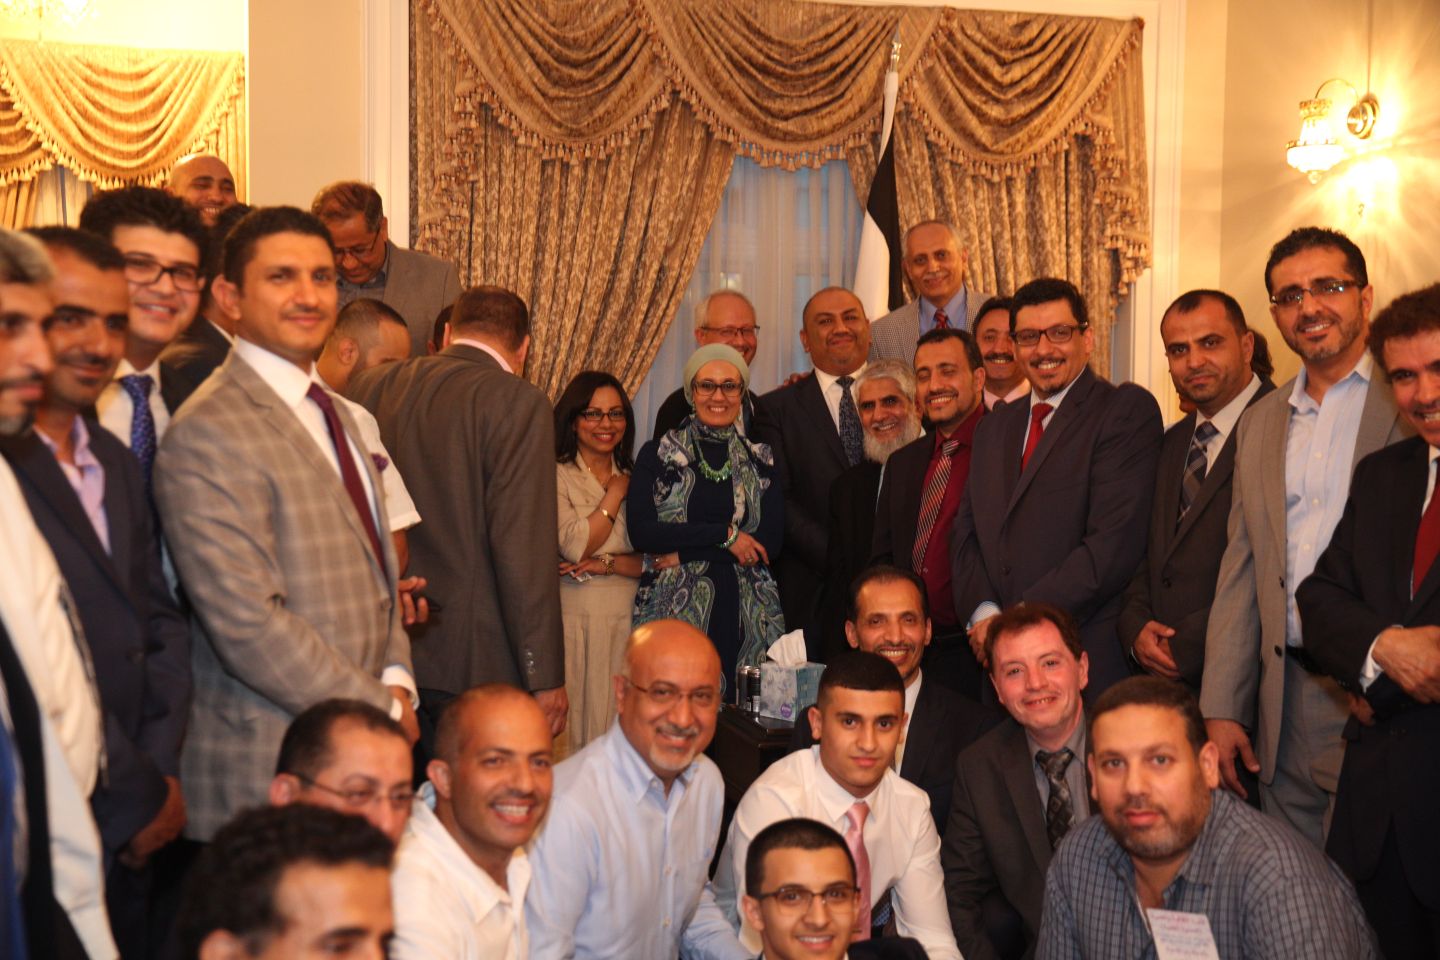 السفير اليماني: الوحدة اليمنية هي الحدث الأبرز والصفحة المضيئة في التاريخ العربي الحديث